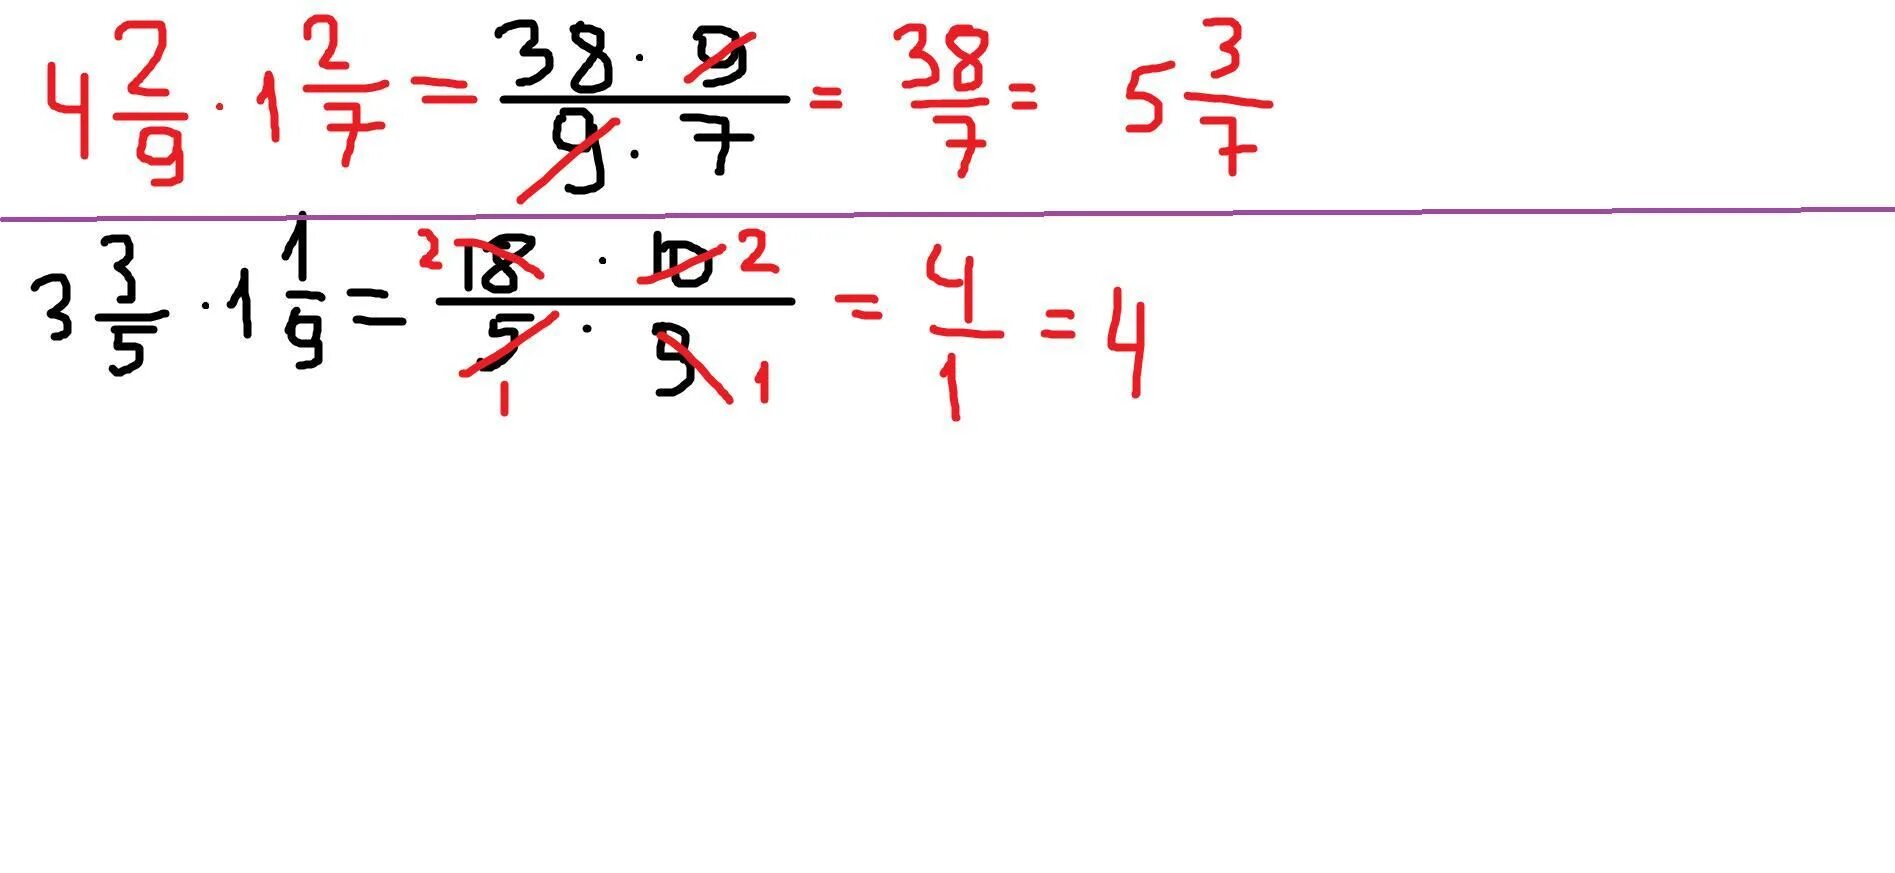 0 8 умножить на 9. Выполните умножение 7 2 умножить на 4 8 столбиком. Выполните умножение -5/14*(2 4/5). Выполни умножение (1/3x−3/13y)⋅(1/3x+3/13y).. 4/5 Умножить на 15/16.